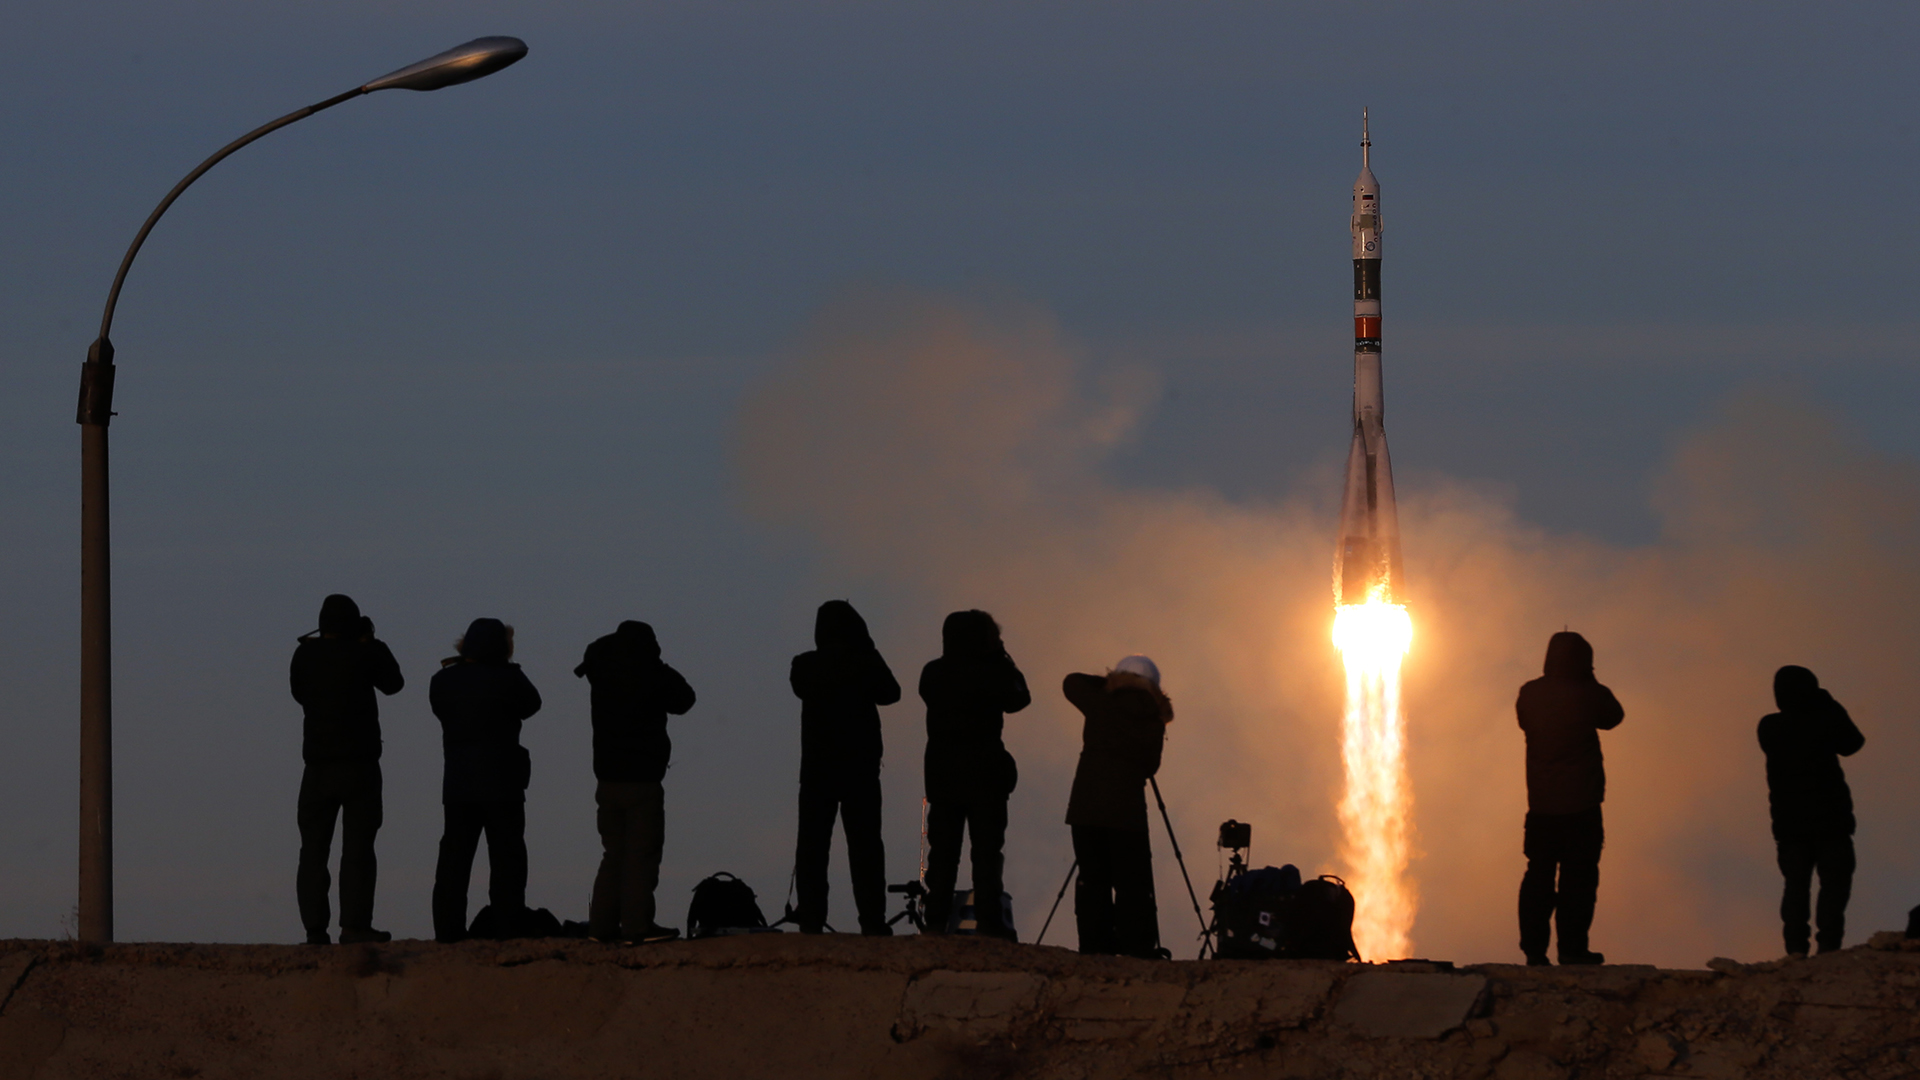 Start einer Sojus Rakete | Bildquelle: MAXIM SHIPENKOV/EPA-EFE/REX/Shut